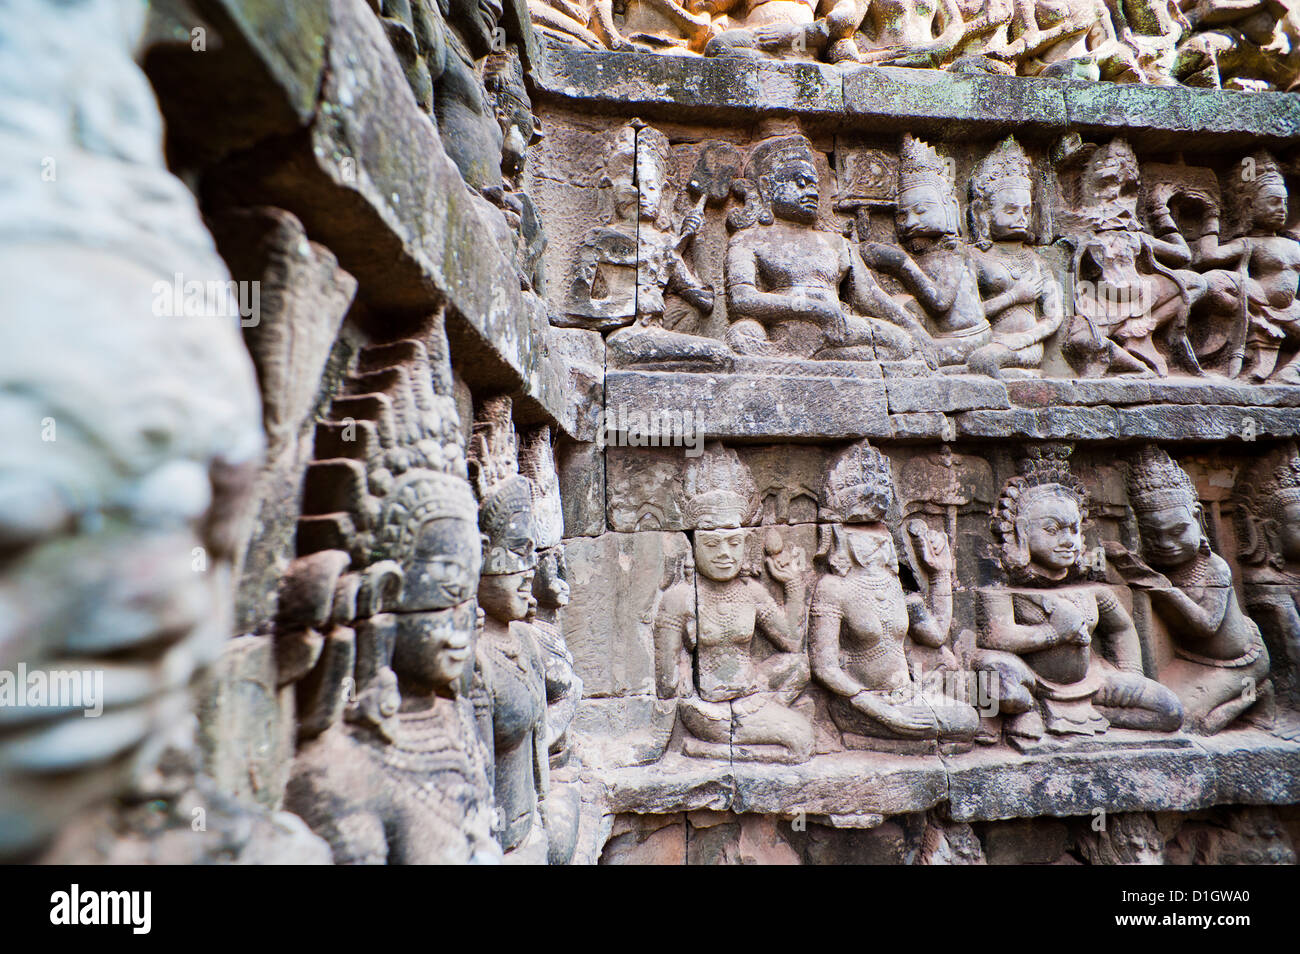 Bassorilievi sculture in pietra presso la terrazza del re lebbroso, Angkor Thom, Siem Reap Provincia, Cambogia, Indocina, sud-est asiatico Foto Stock